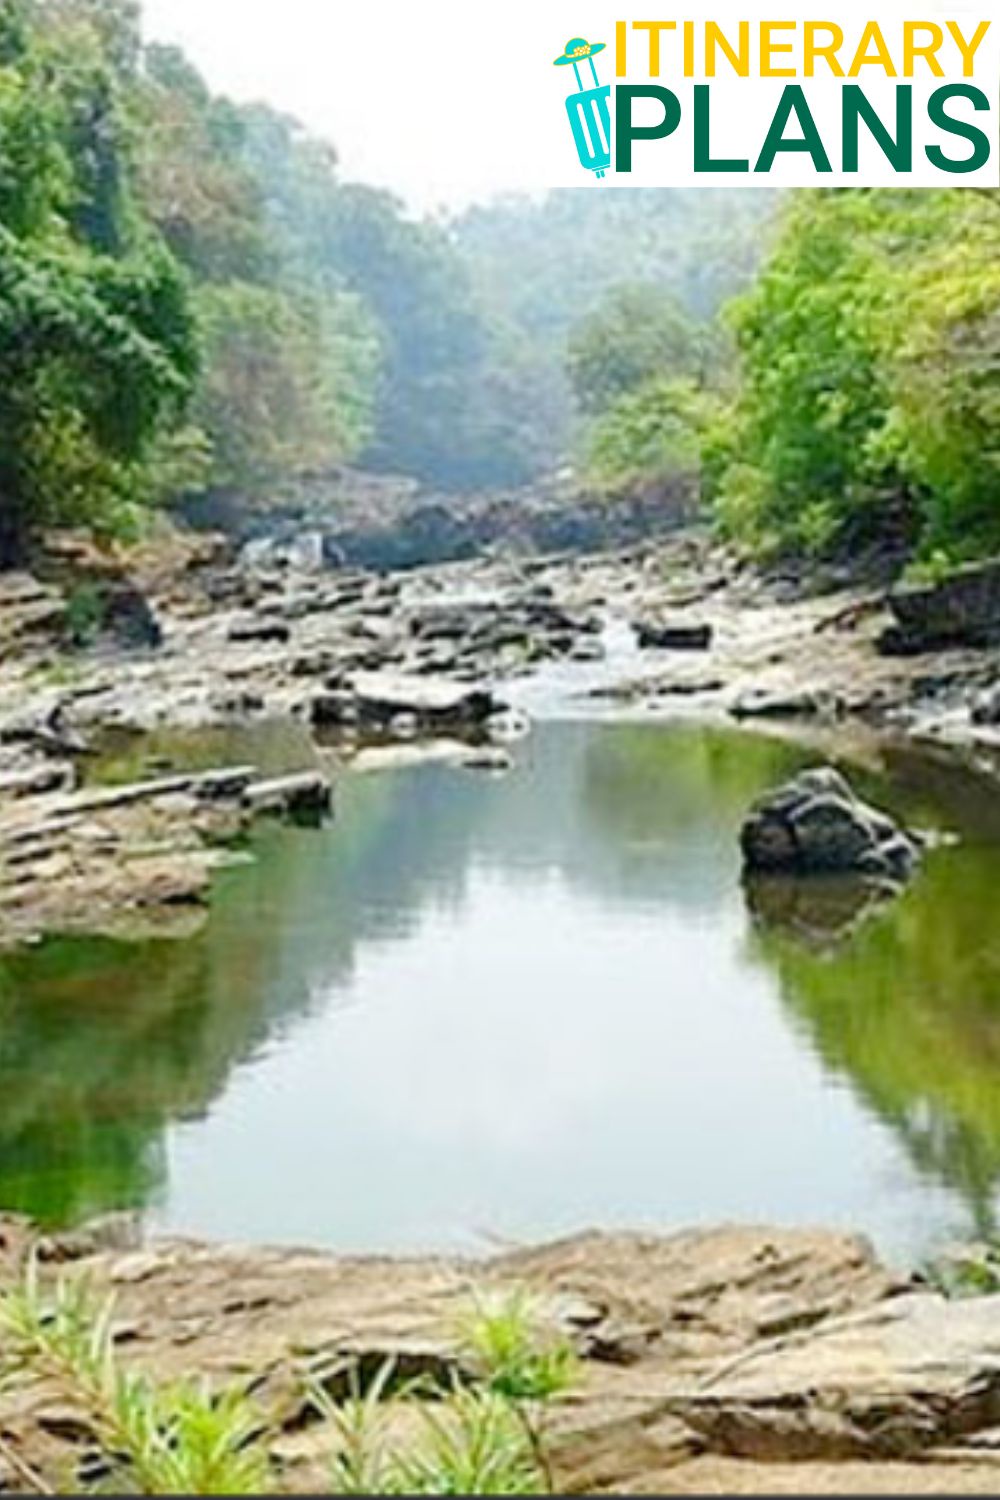 Manikyadhara Falls: A Natural Wonder in Chikmagalur